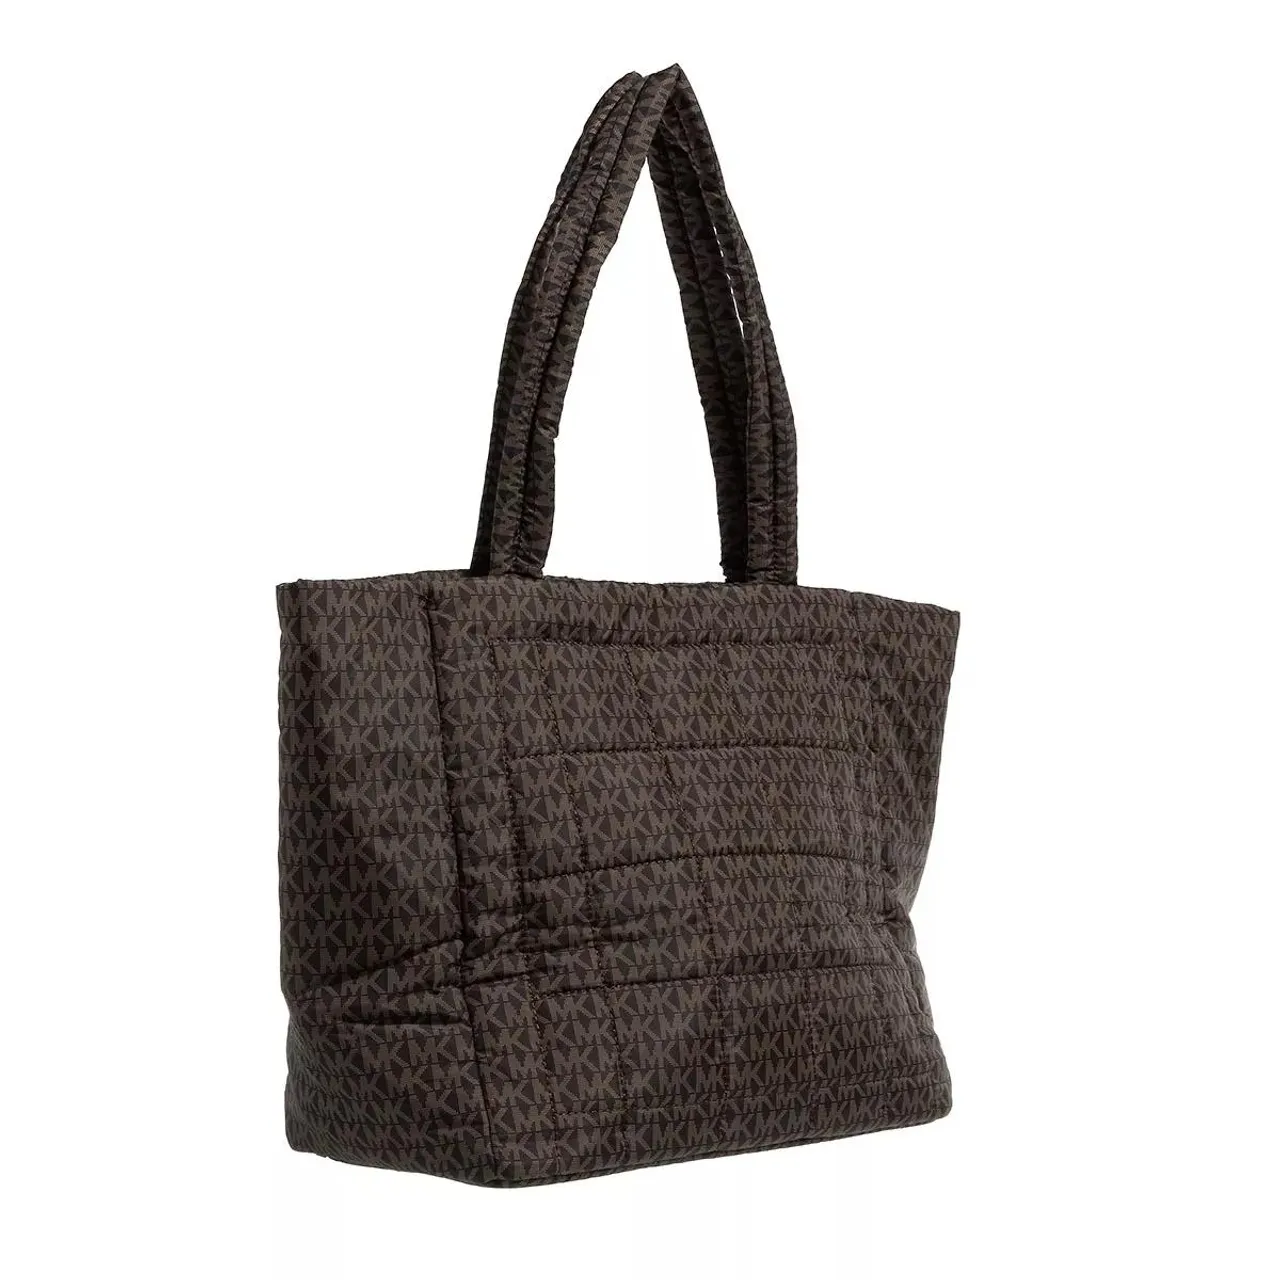 Michael Kors Tote Bags - Lilah Large Open Tote - brown - Tote Bags for ladies